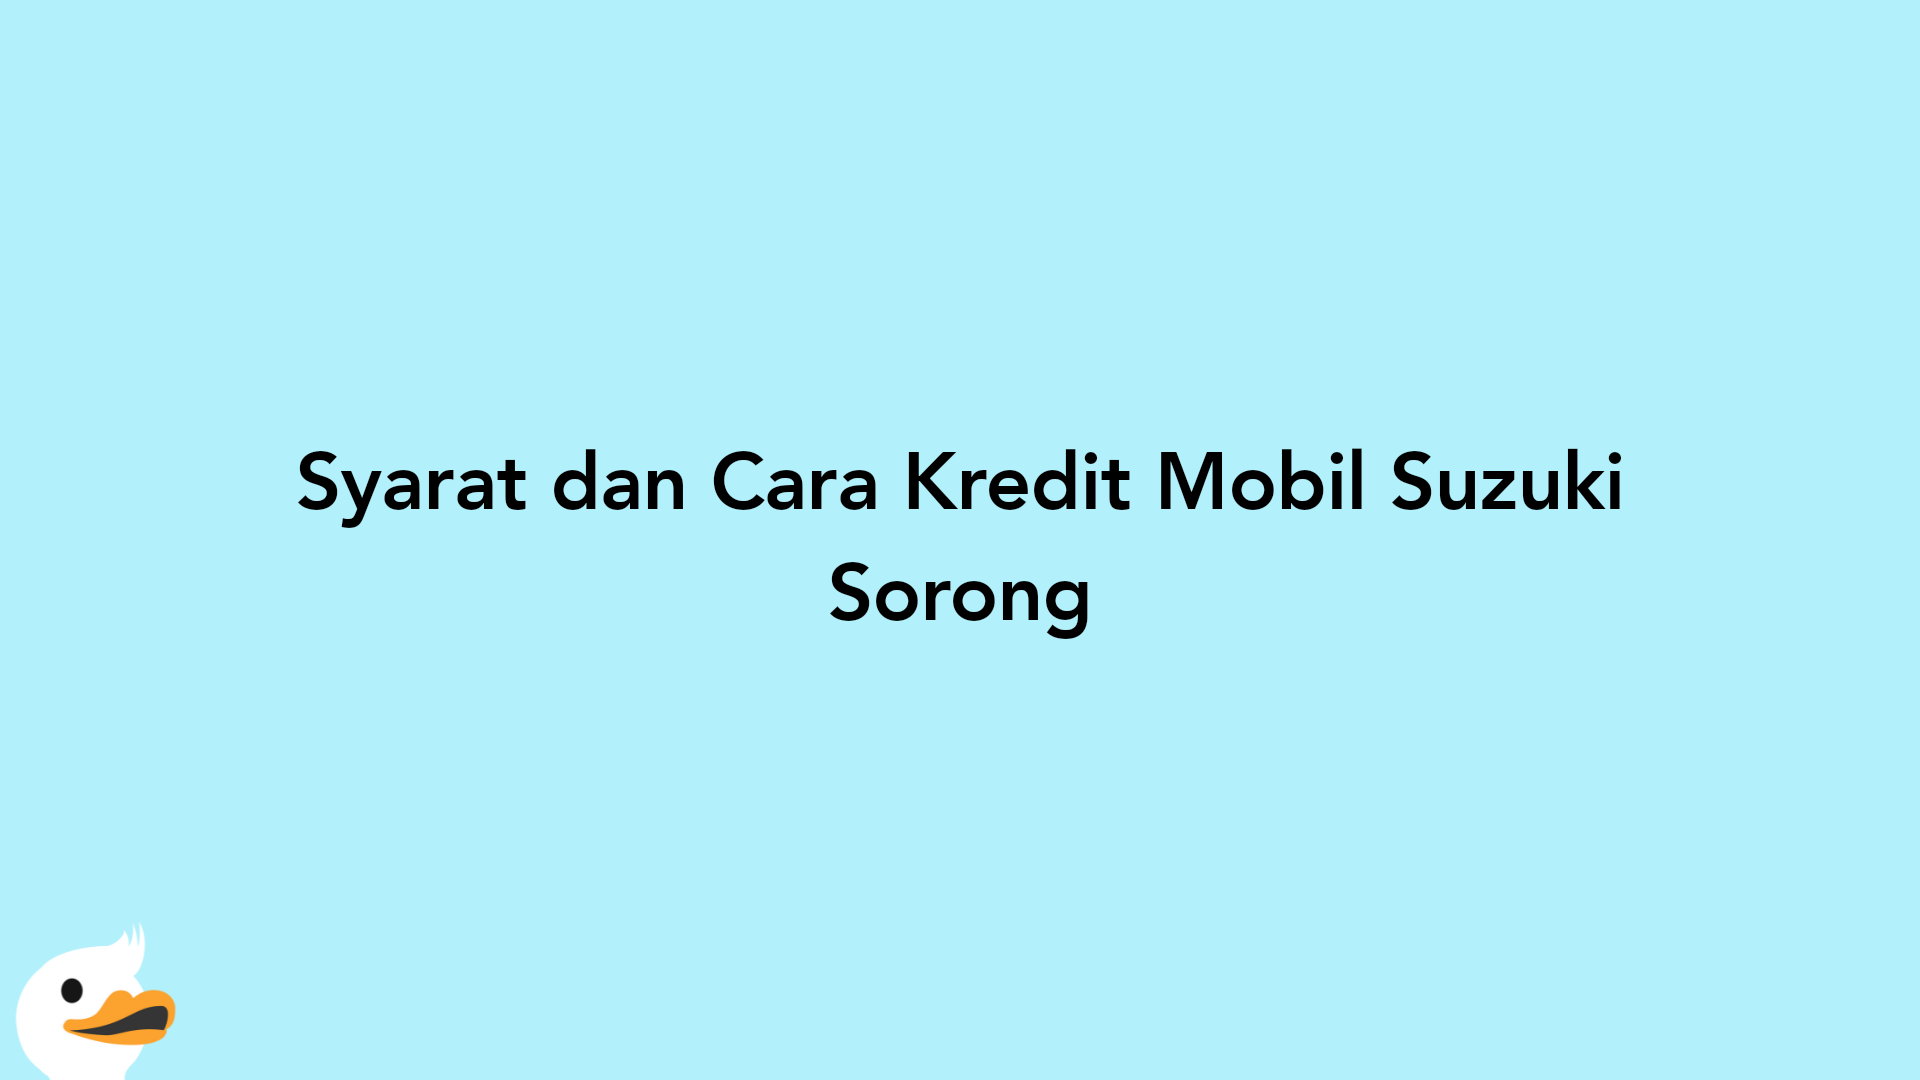 Syarat dan Cara Kredit Mobil Suzuki Sorong